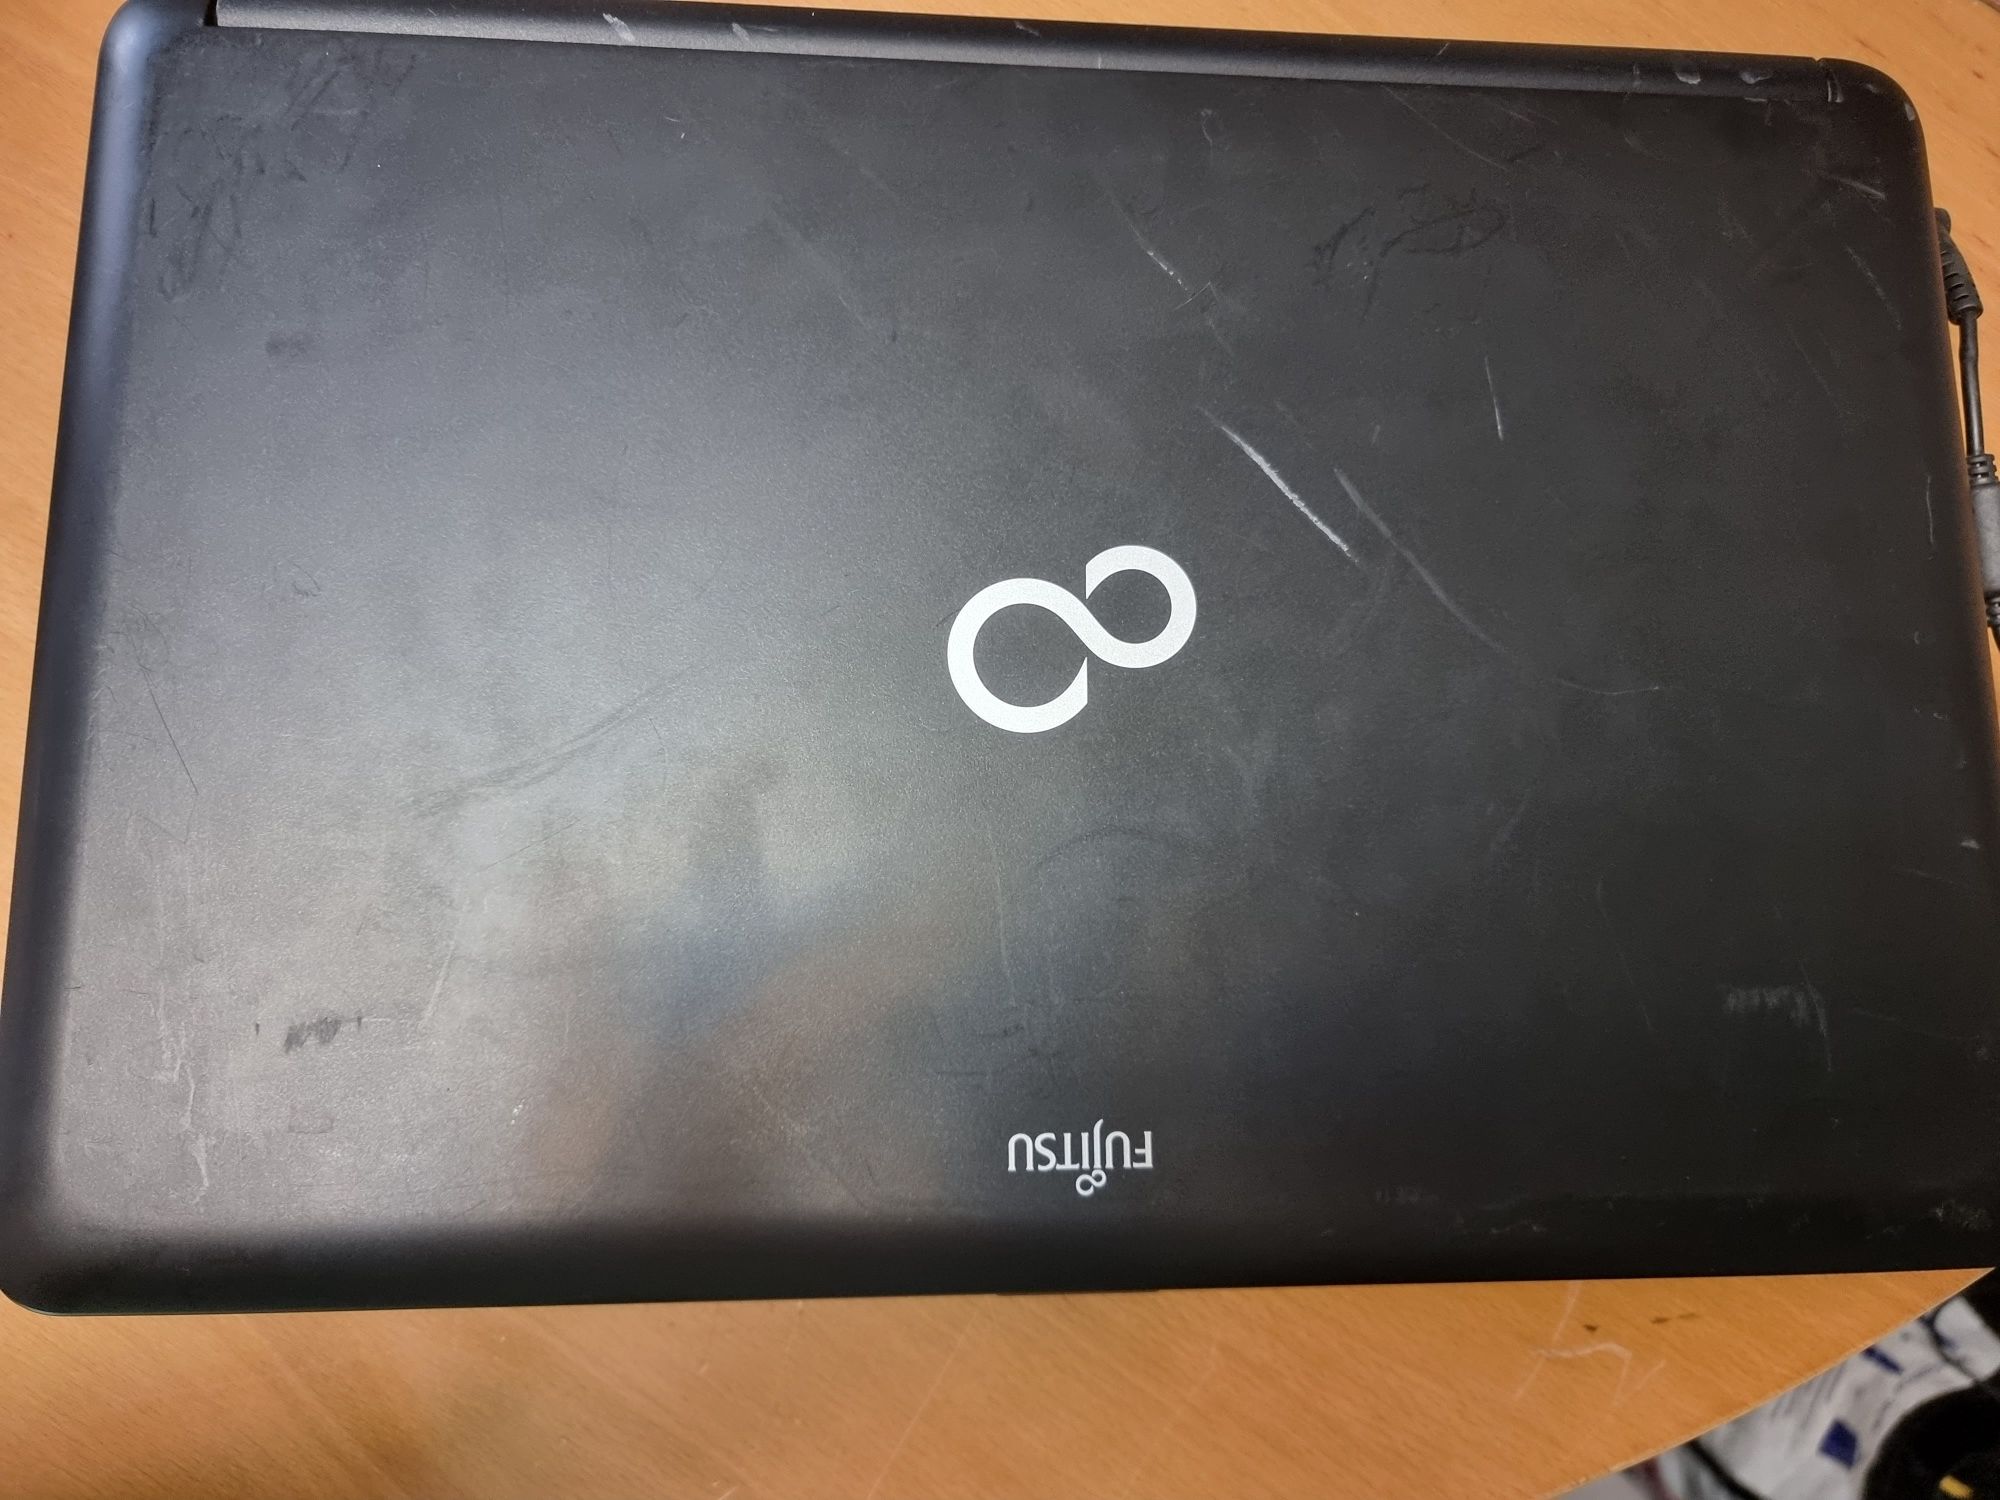 Лаптоп Fujitsu 15,6 A530